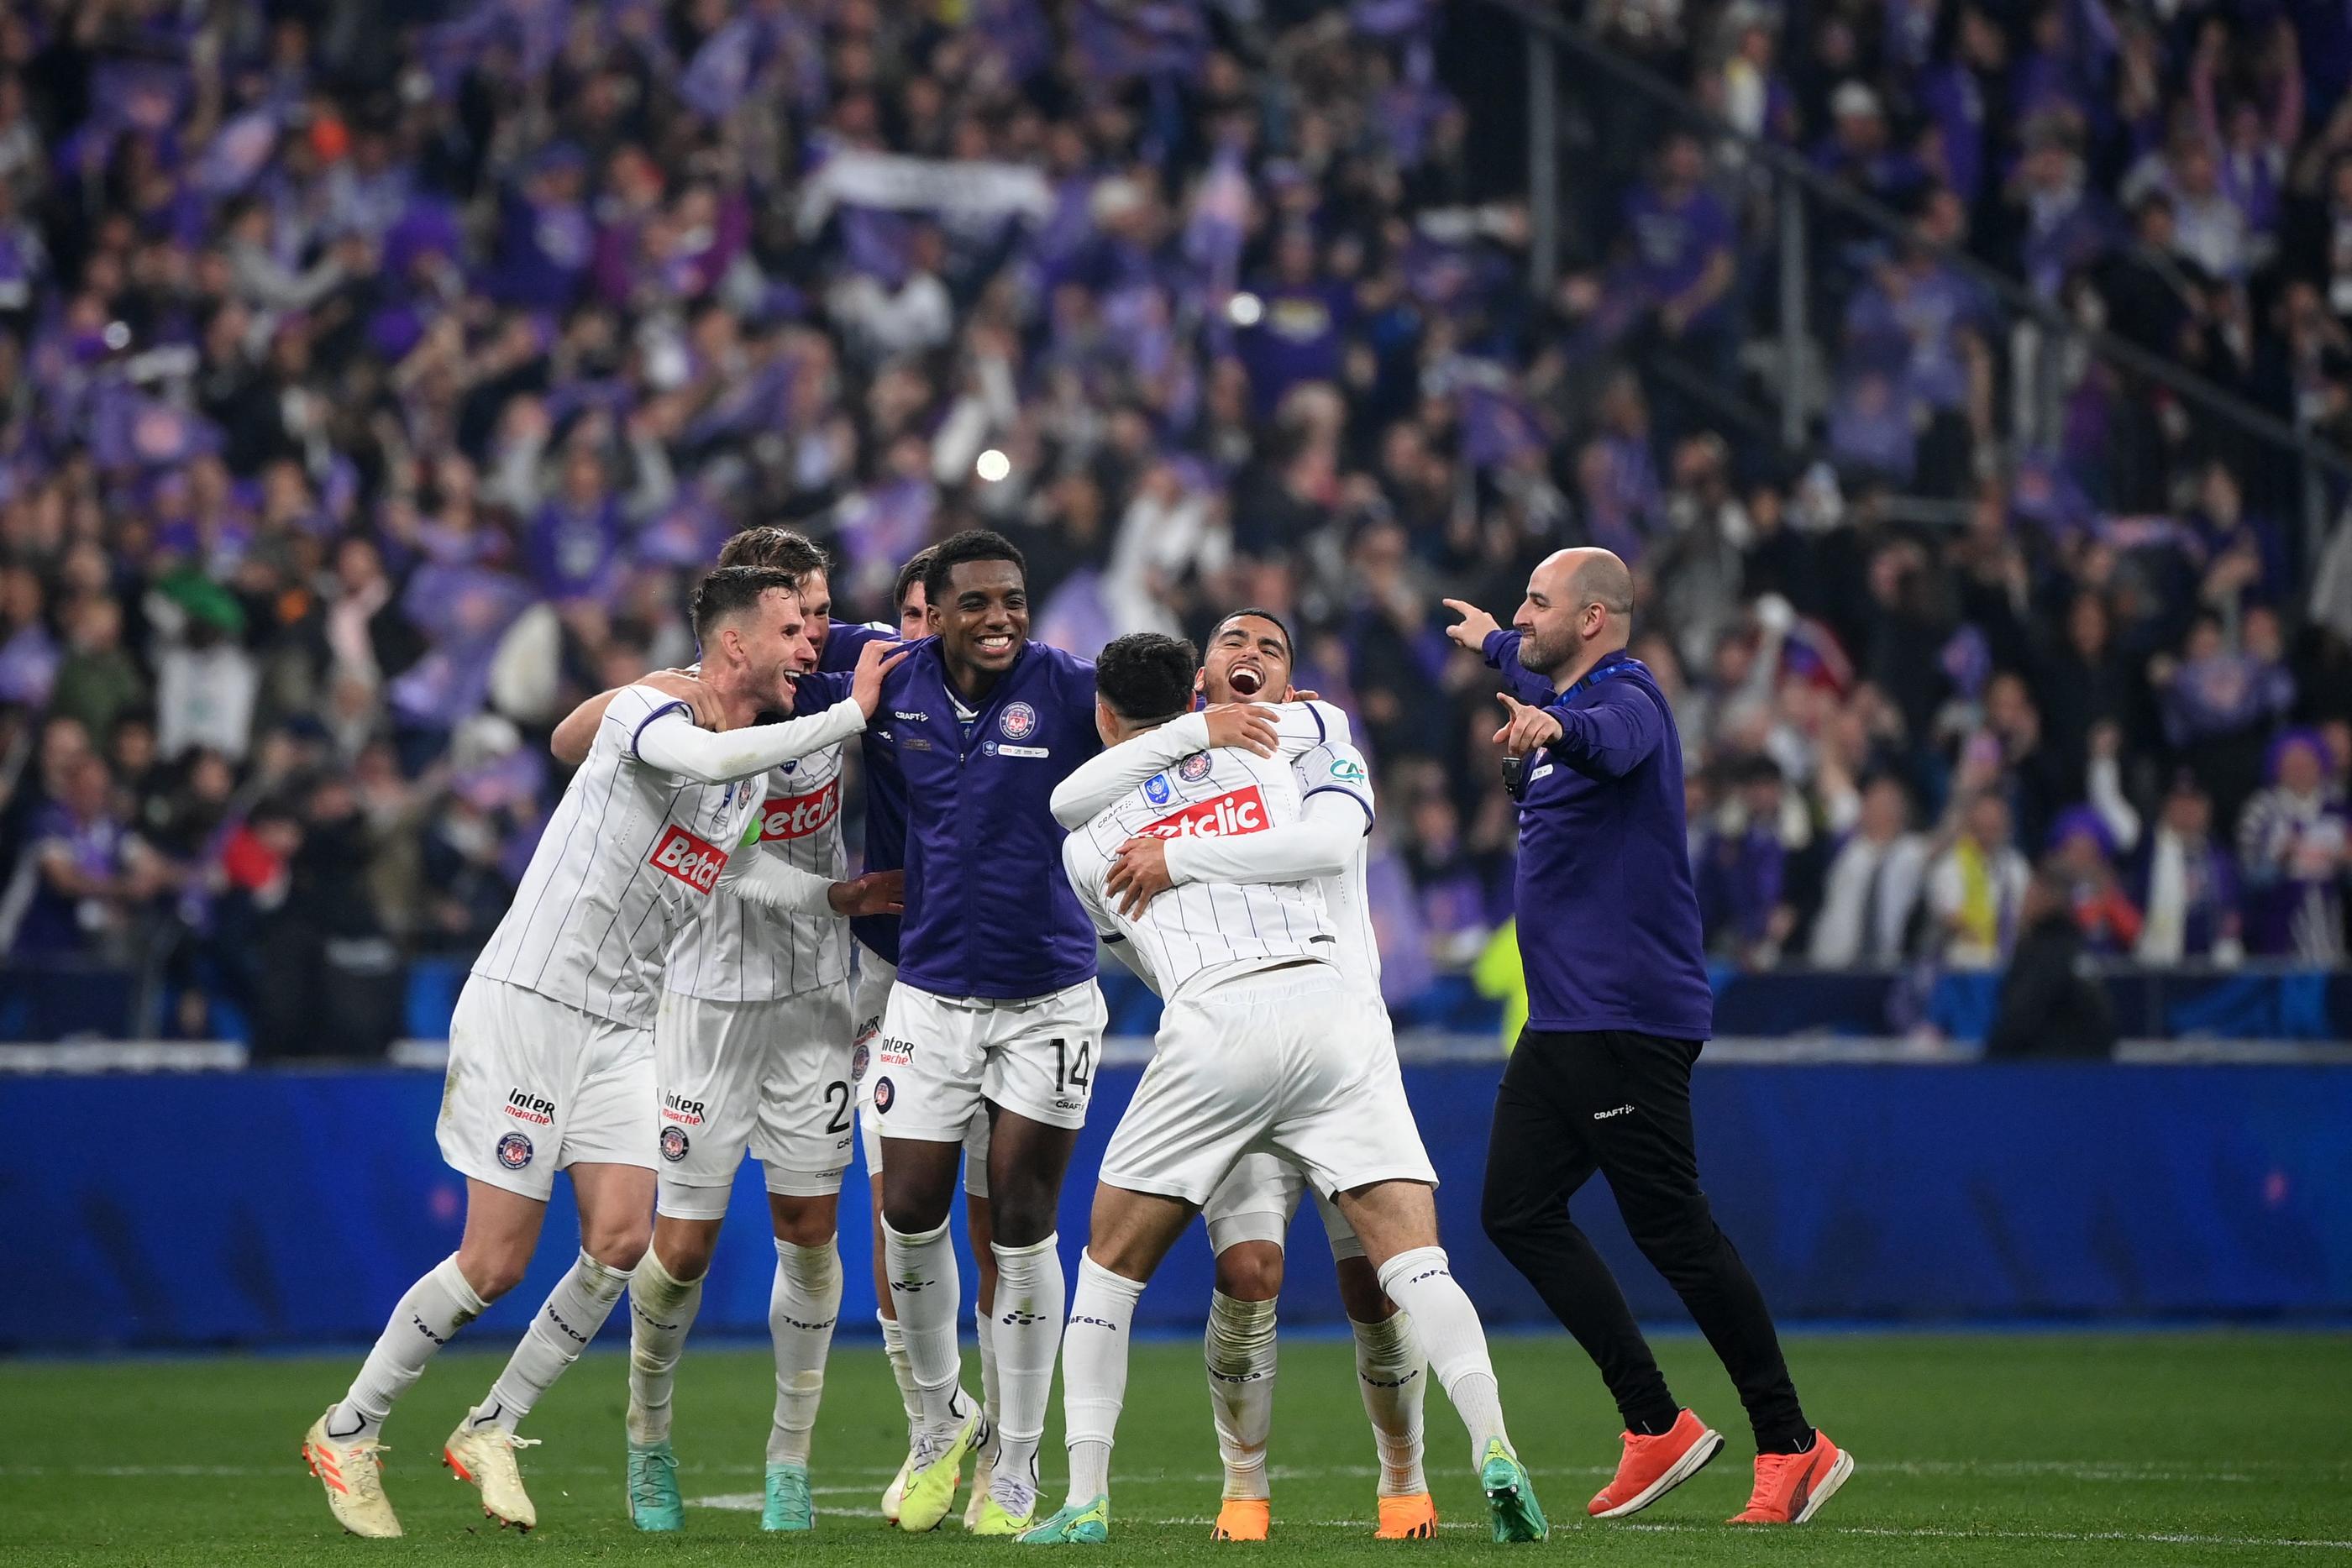 La joie des Toulousains vainqueurs de la Coupe de France en écrasant Nantes (5-1), samedi soir au Stade de France. AFP/Franck Fife